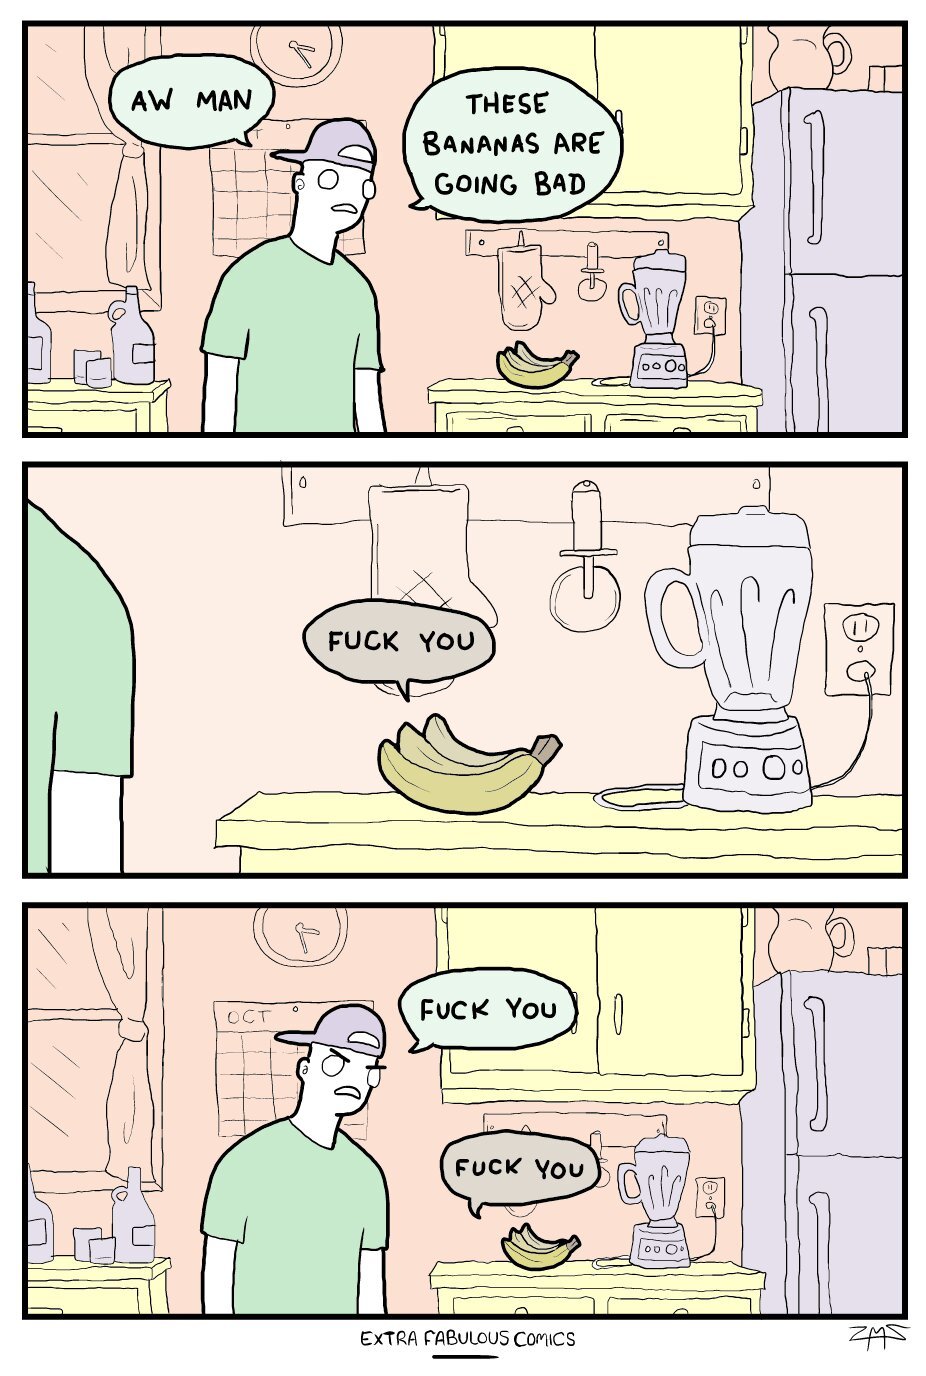 Bad Bananas - meme